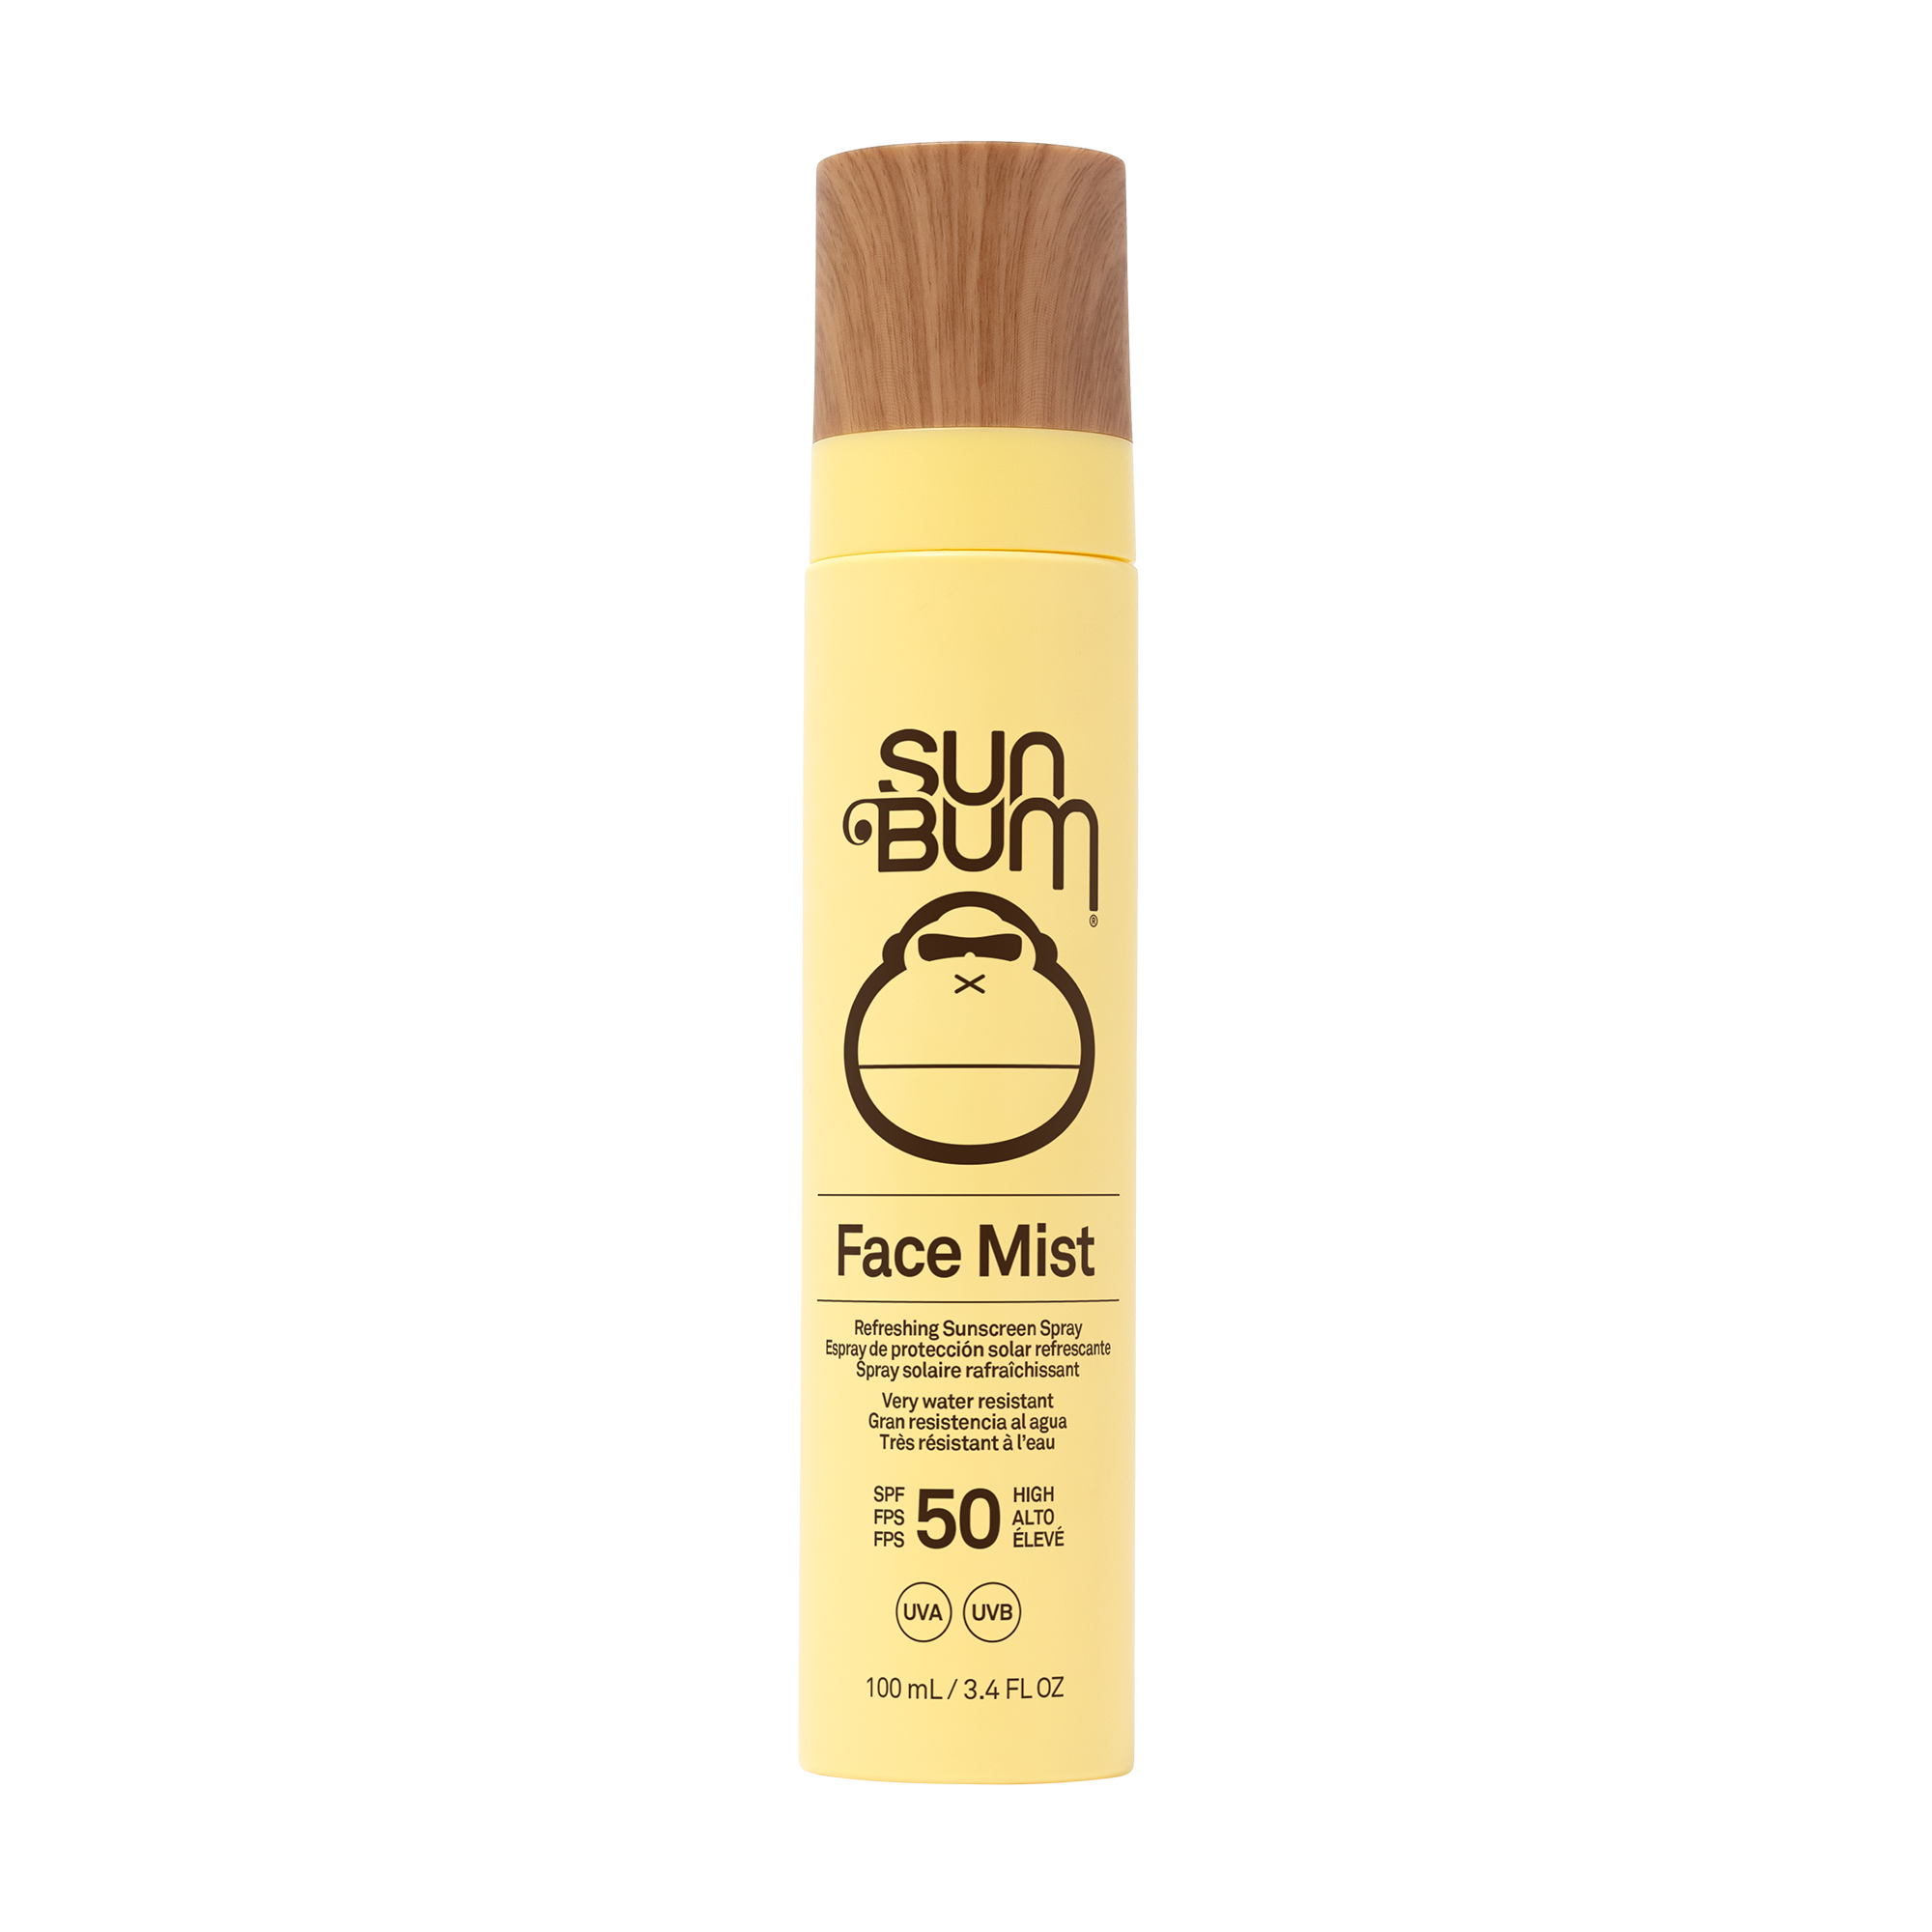 Facial sun spray SPF 50 | Sun Bum